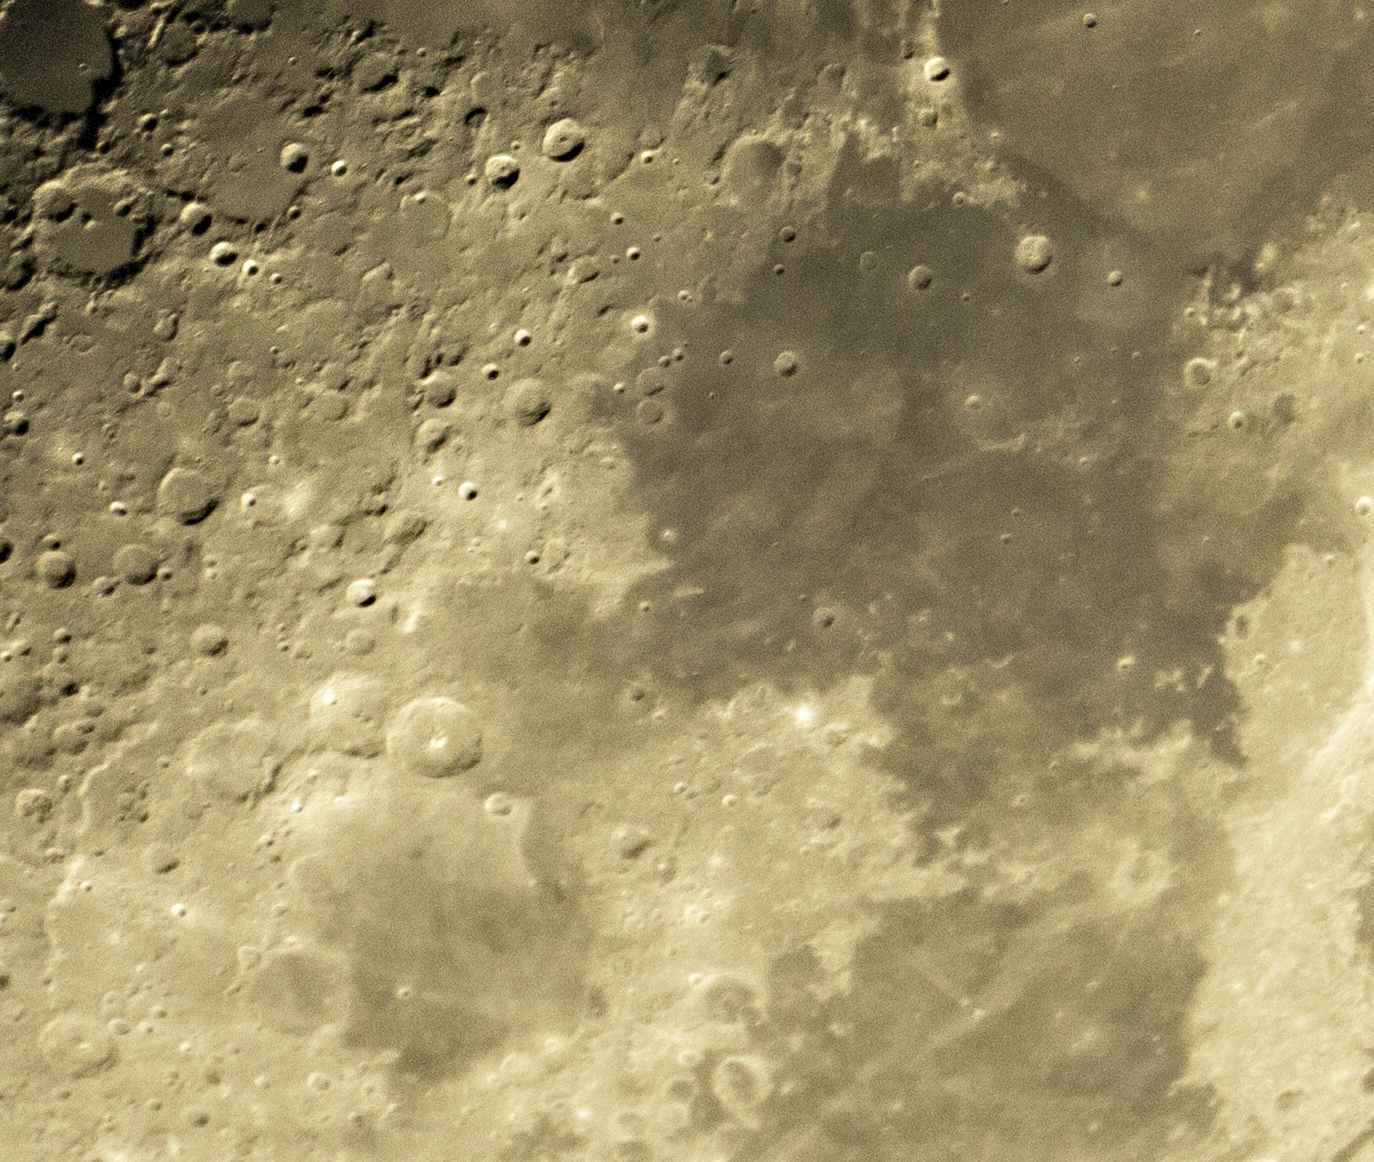 Moon 26 April 2015 2